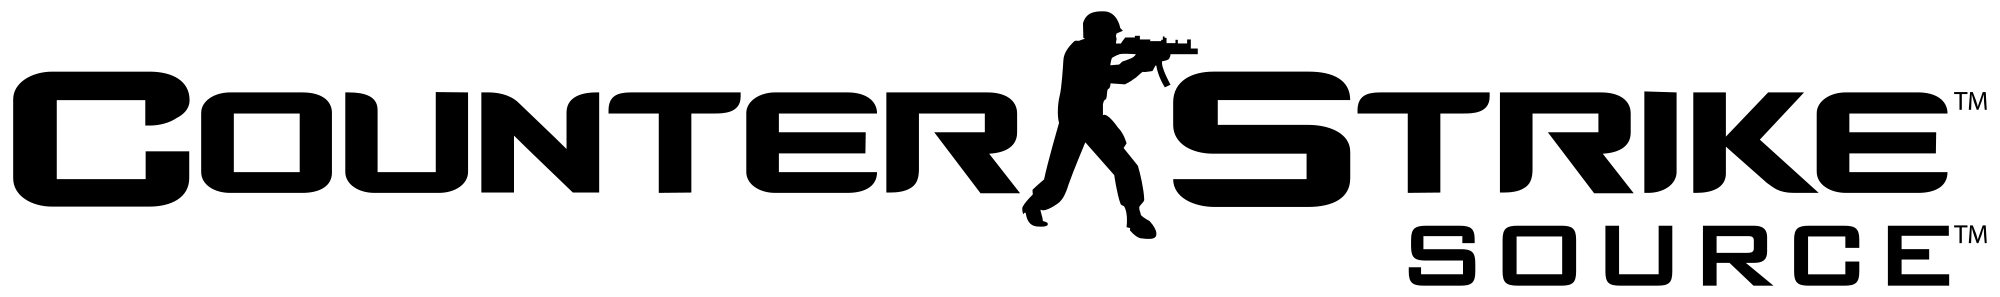 Counter-Strike Logo - Counter Strike Logo PNG File